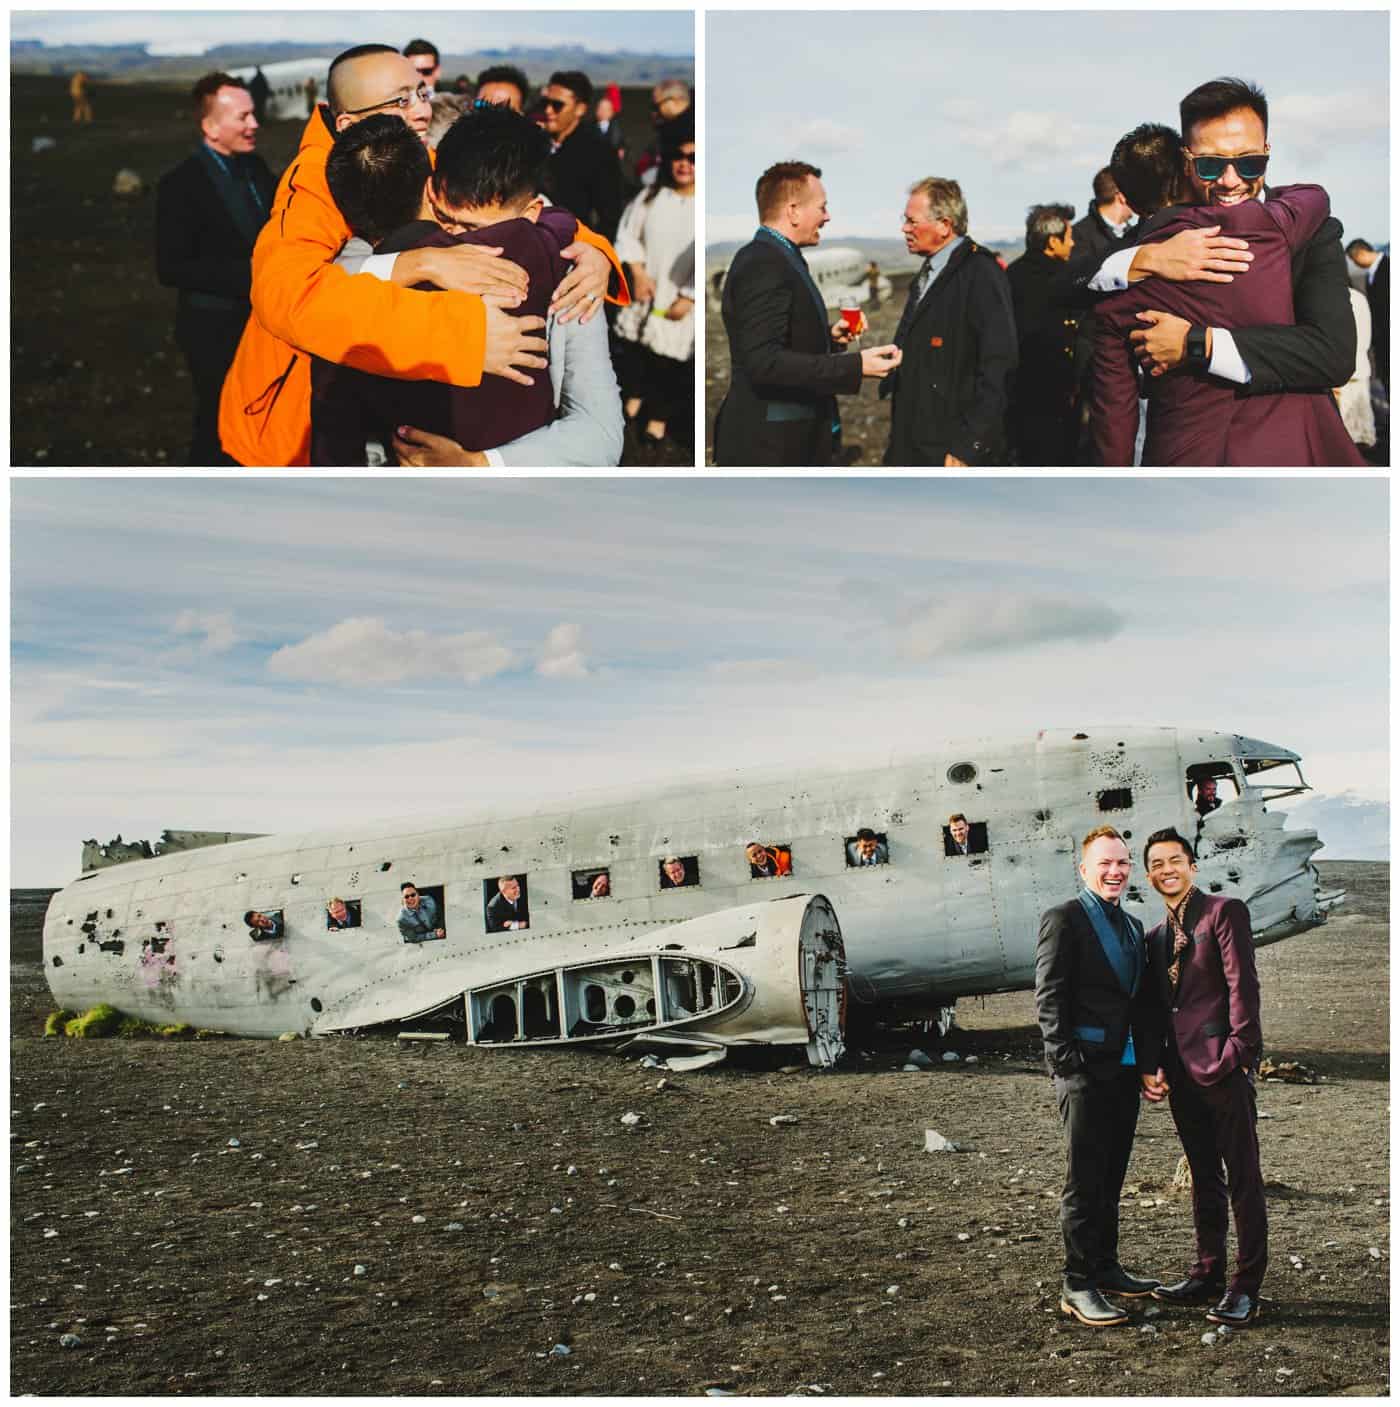 icelend plane wreck wedding photos